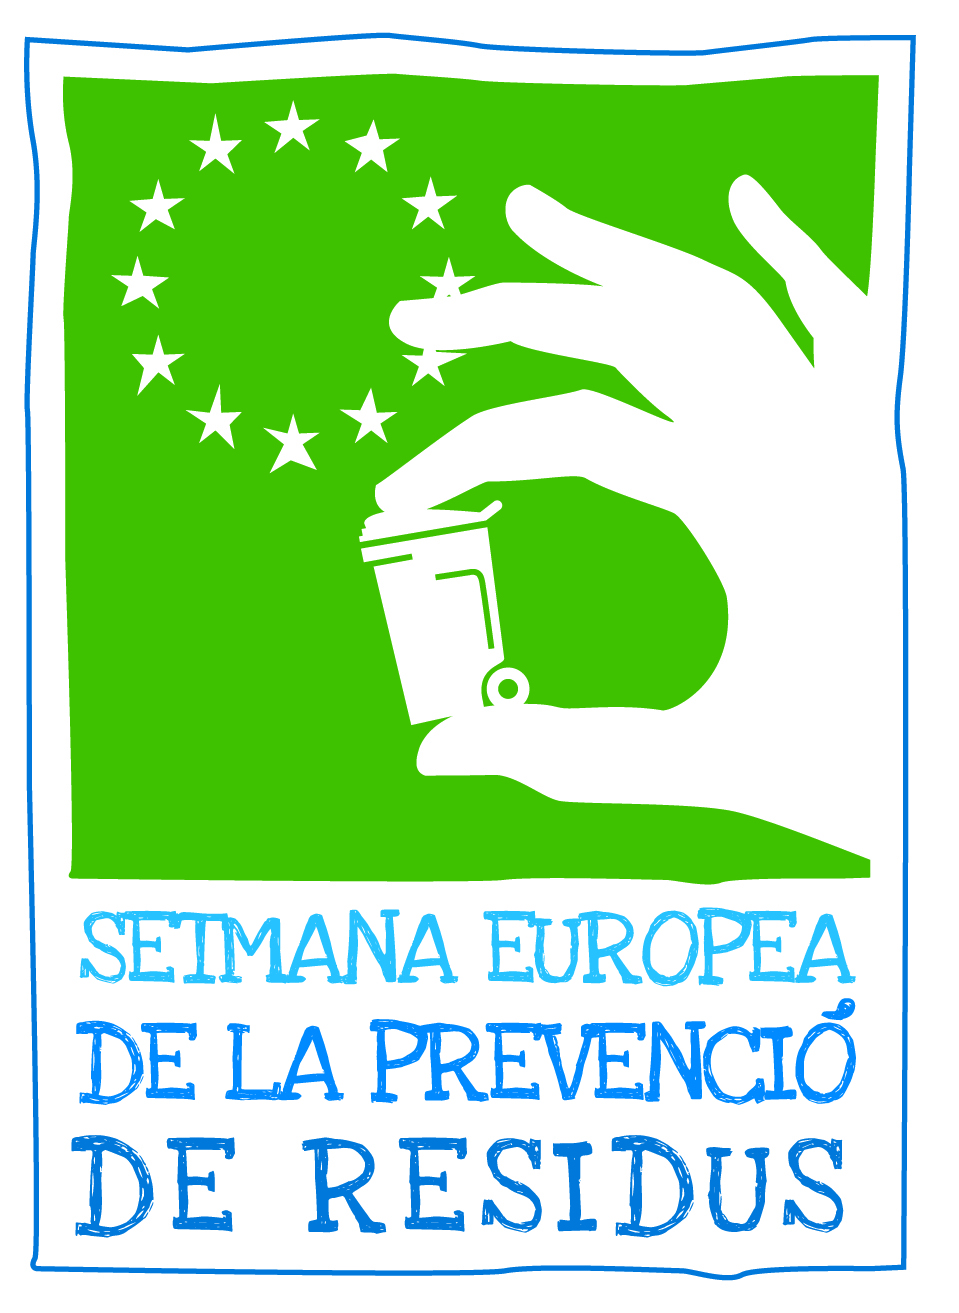 Setmana Europea de la Prevenció de Residus 19-27 novembre 2022